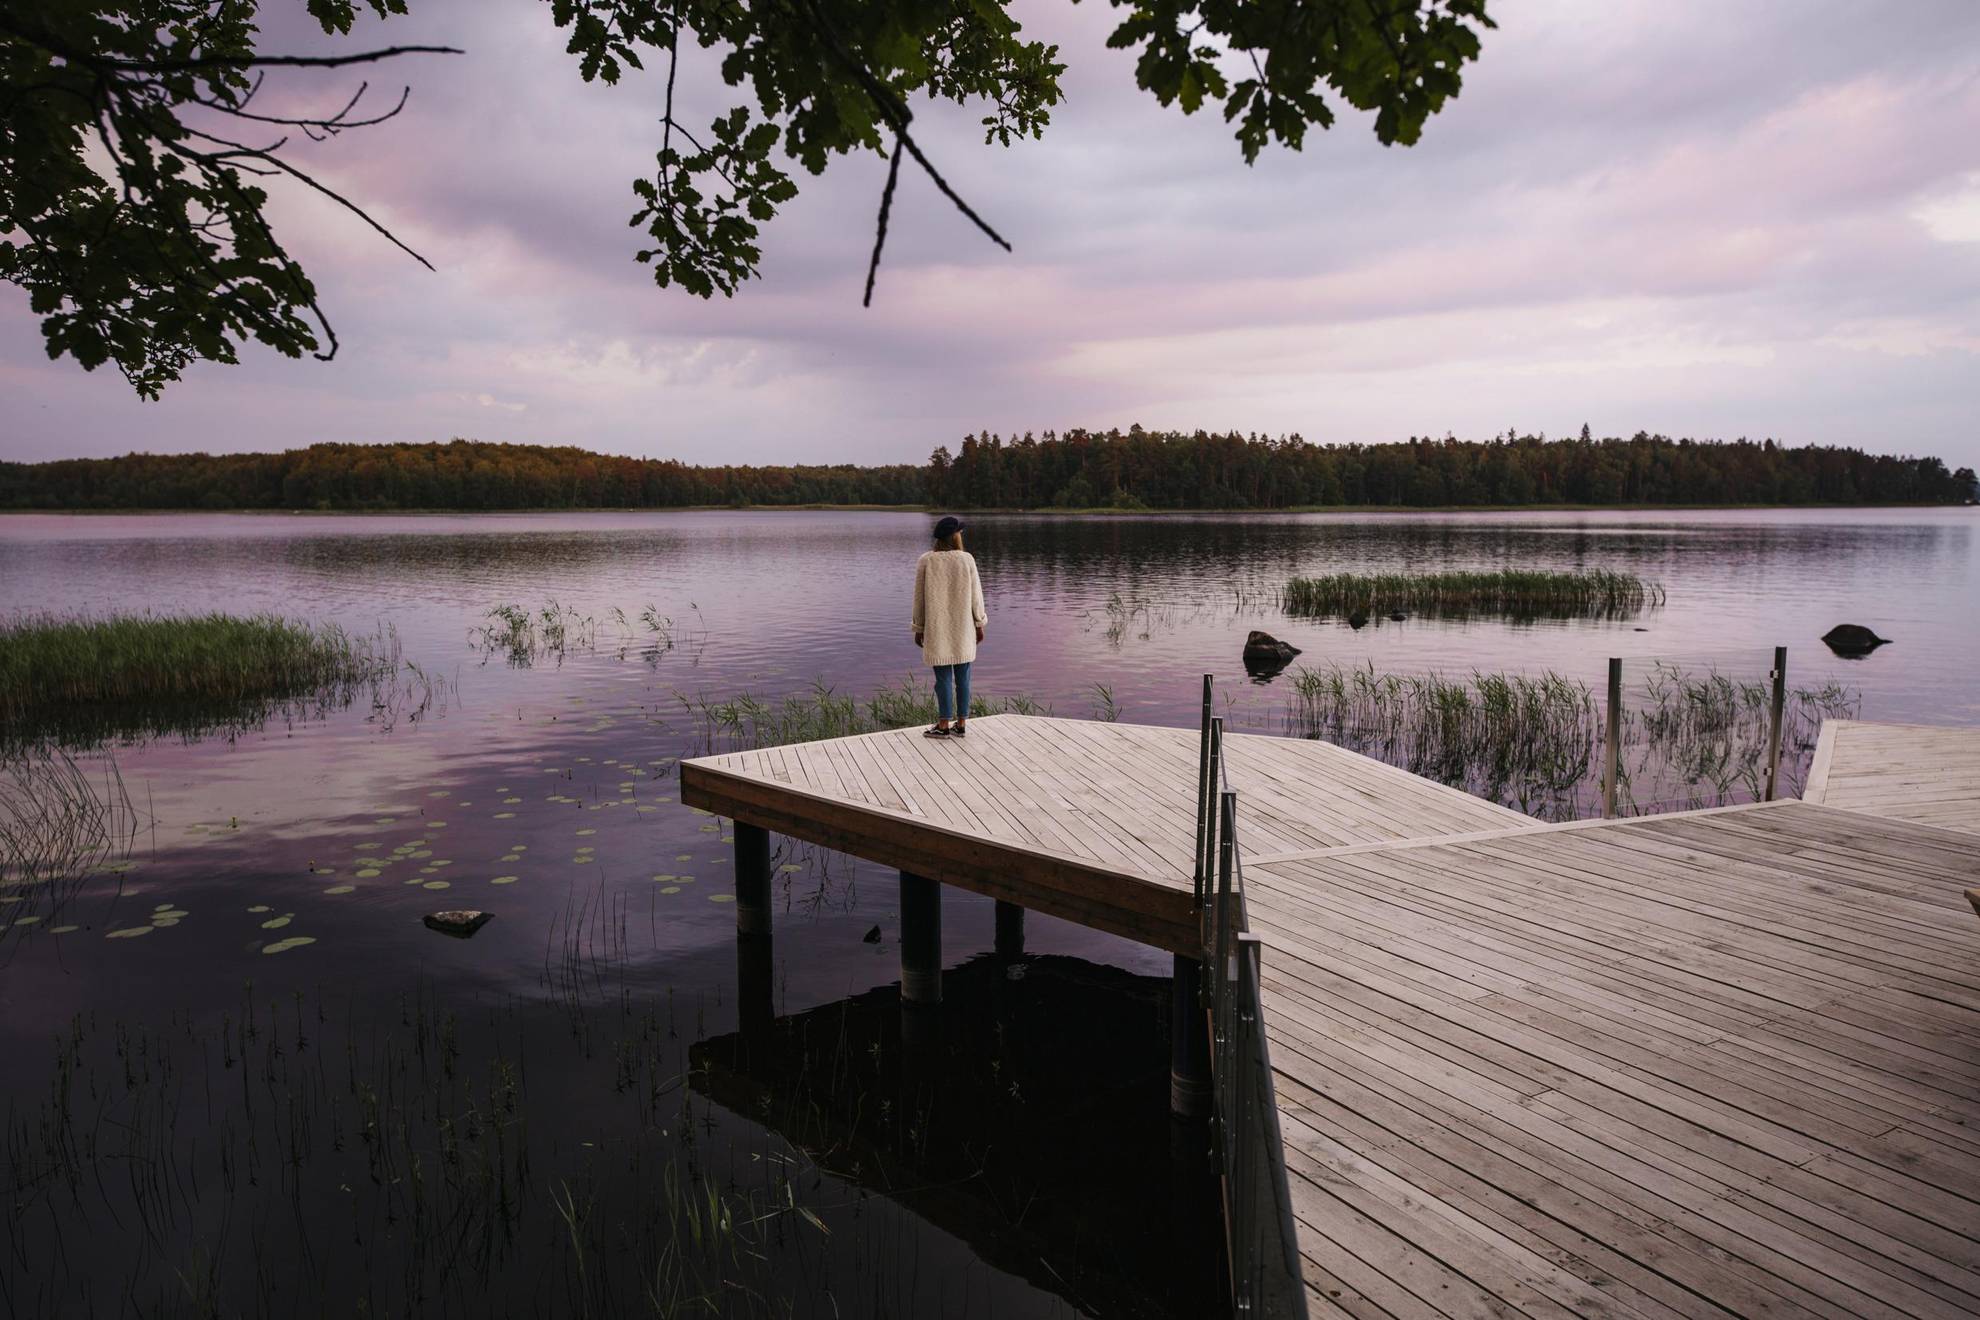 Une femme se tient debout au bord d’un ponton tout en admirant la vue sur le lac.